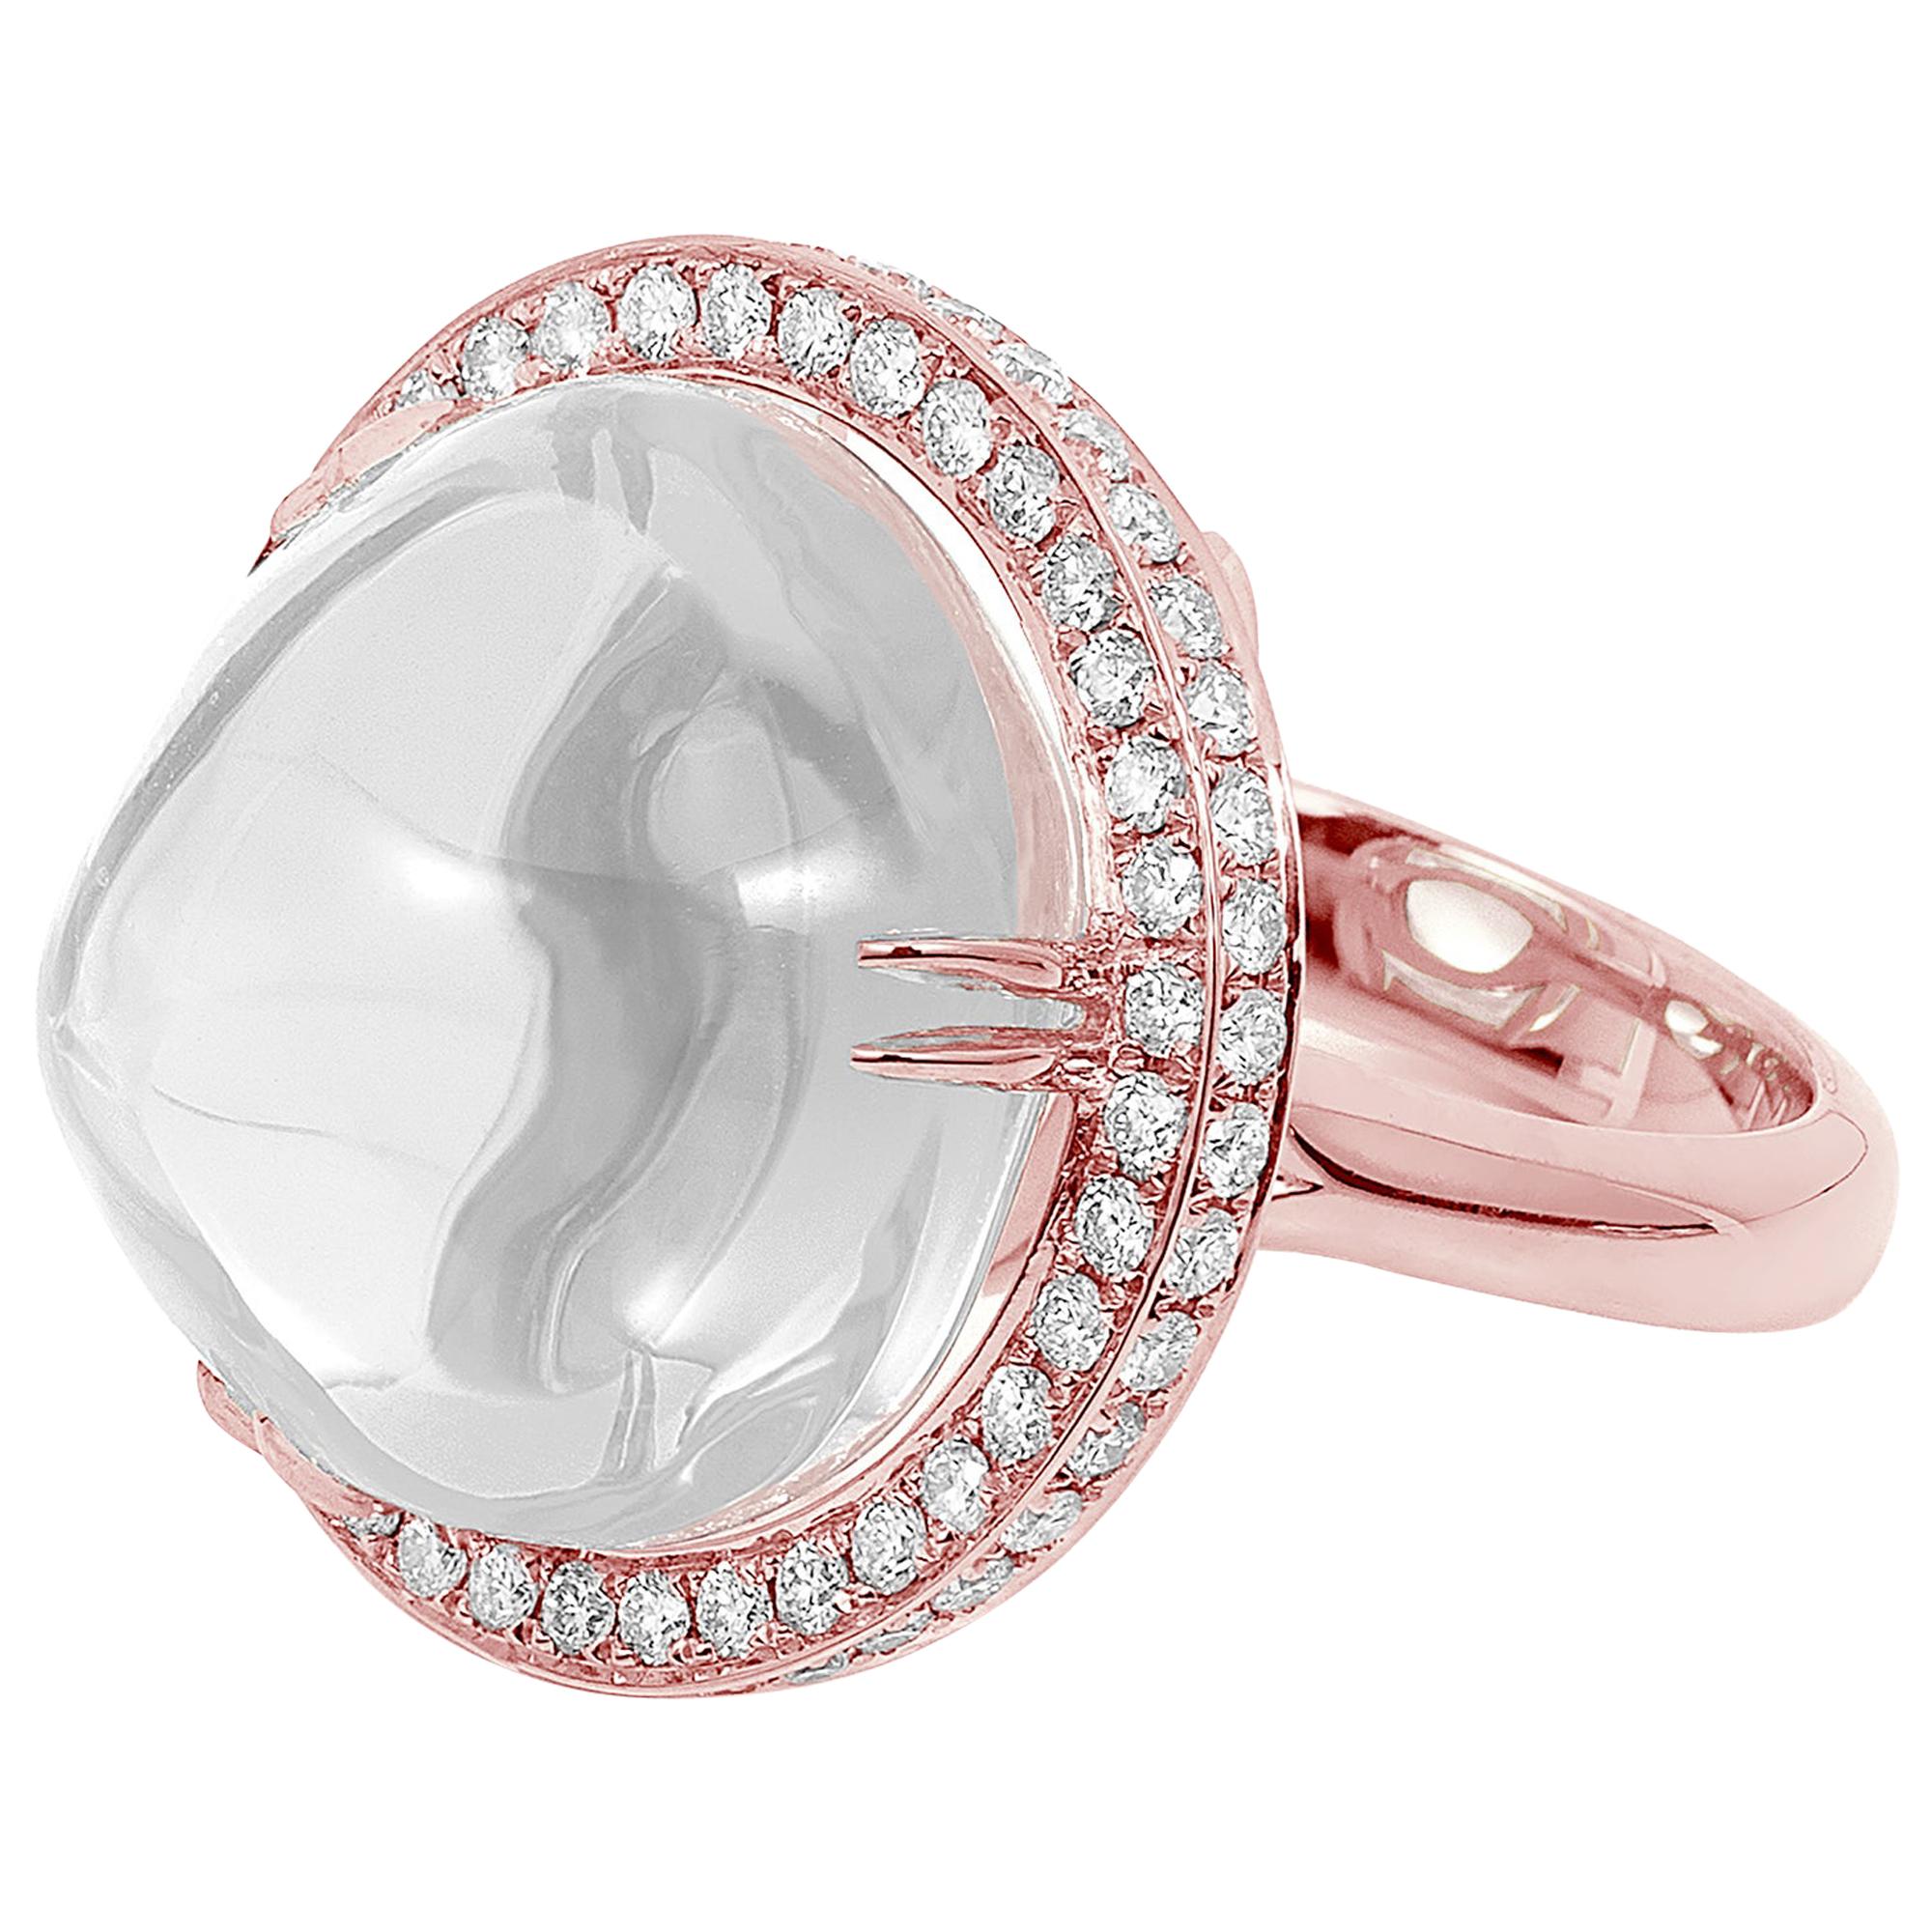 Goshwara Moon Quartz Cabochon and Diamond Ring